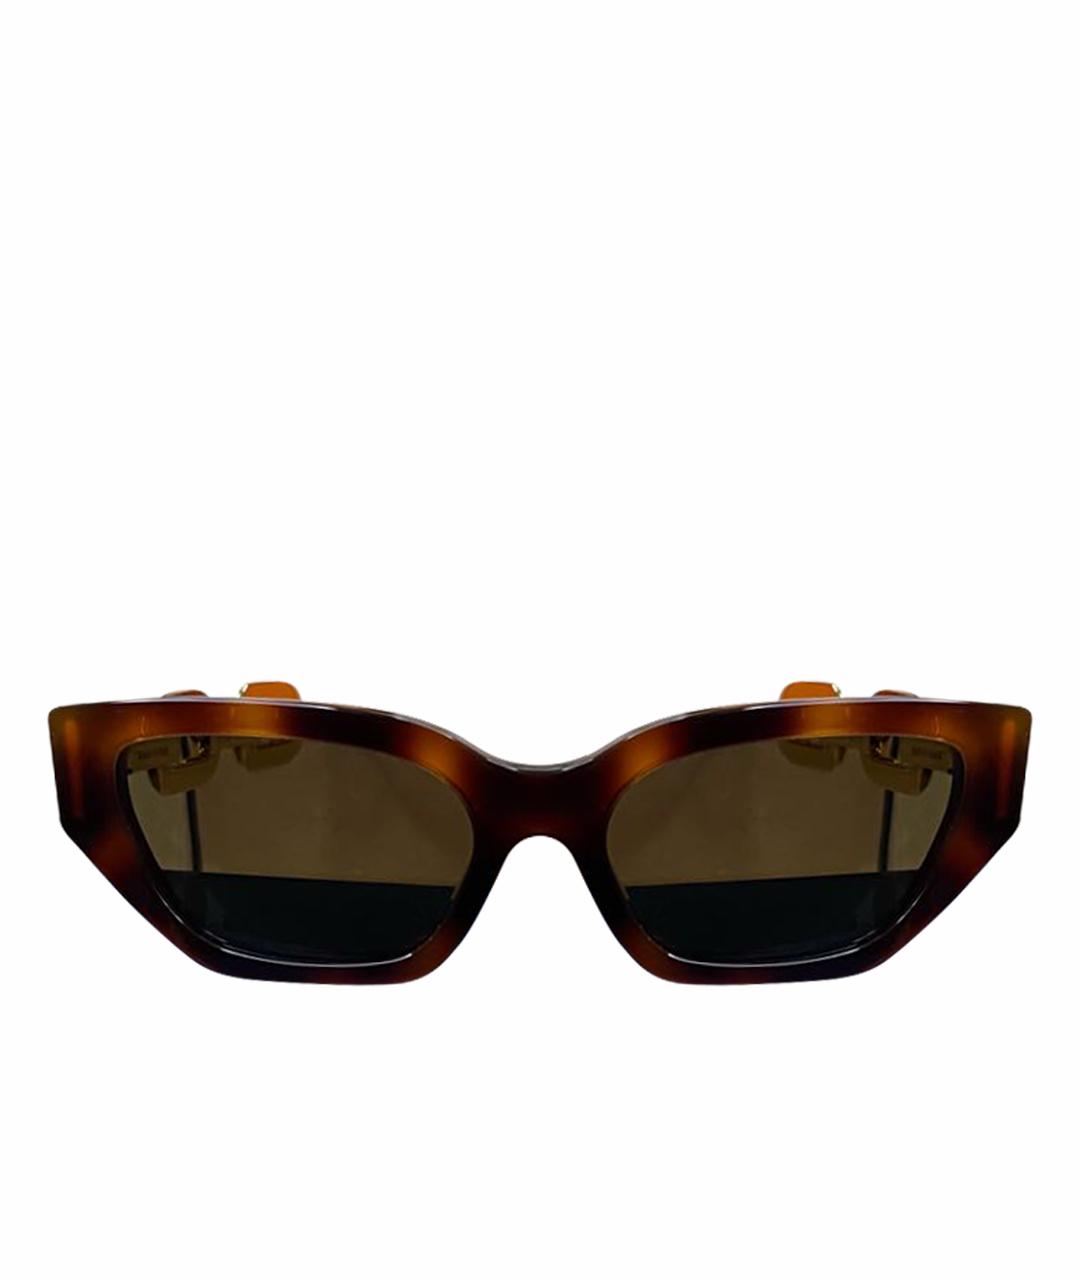 LOUIS VUITTON PRE-OWNED Коричневые солнцезащитные очки, фото 1